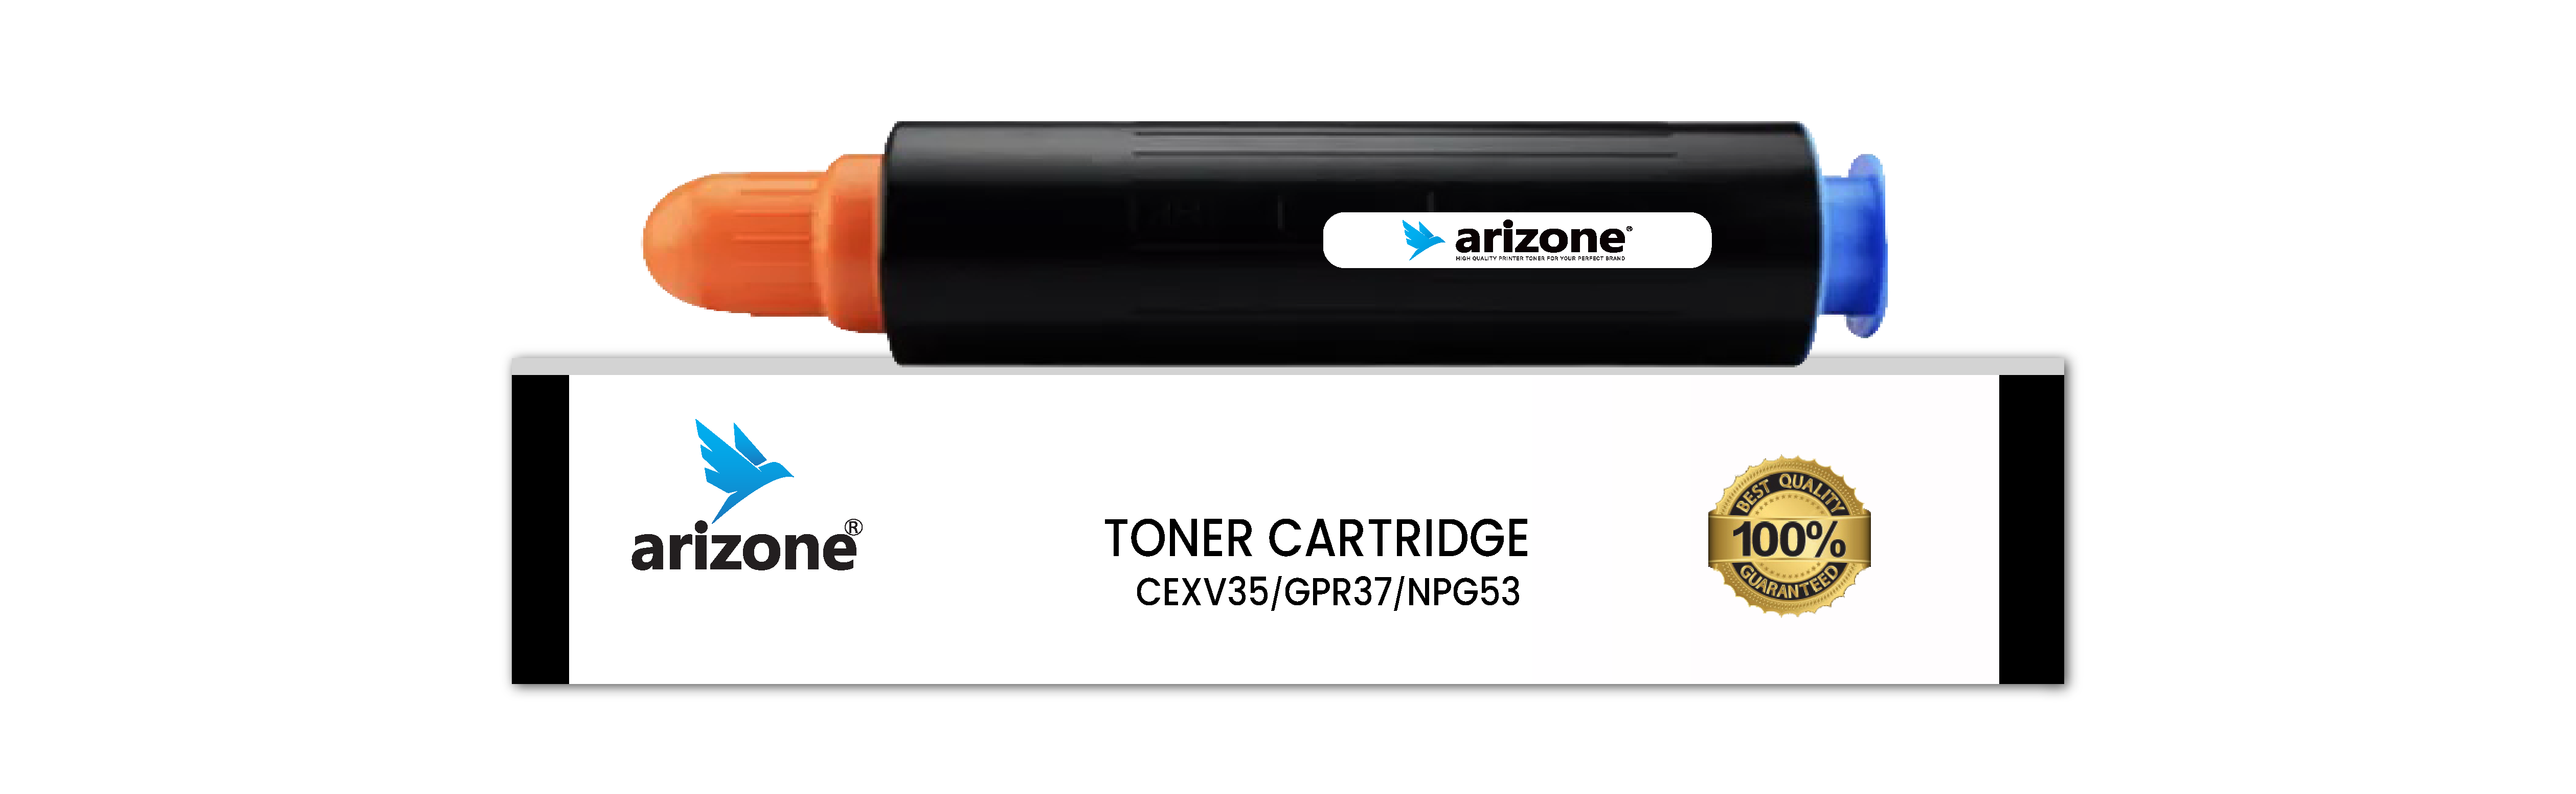 Arizone TONER CARTRIDGE CEXV35/GPR37/NPG53 Black